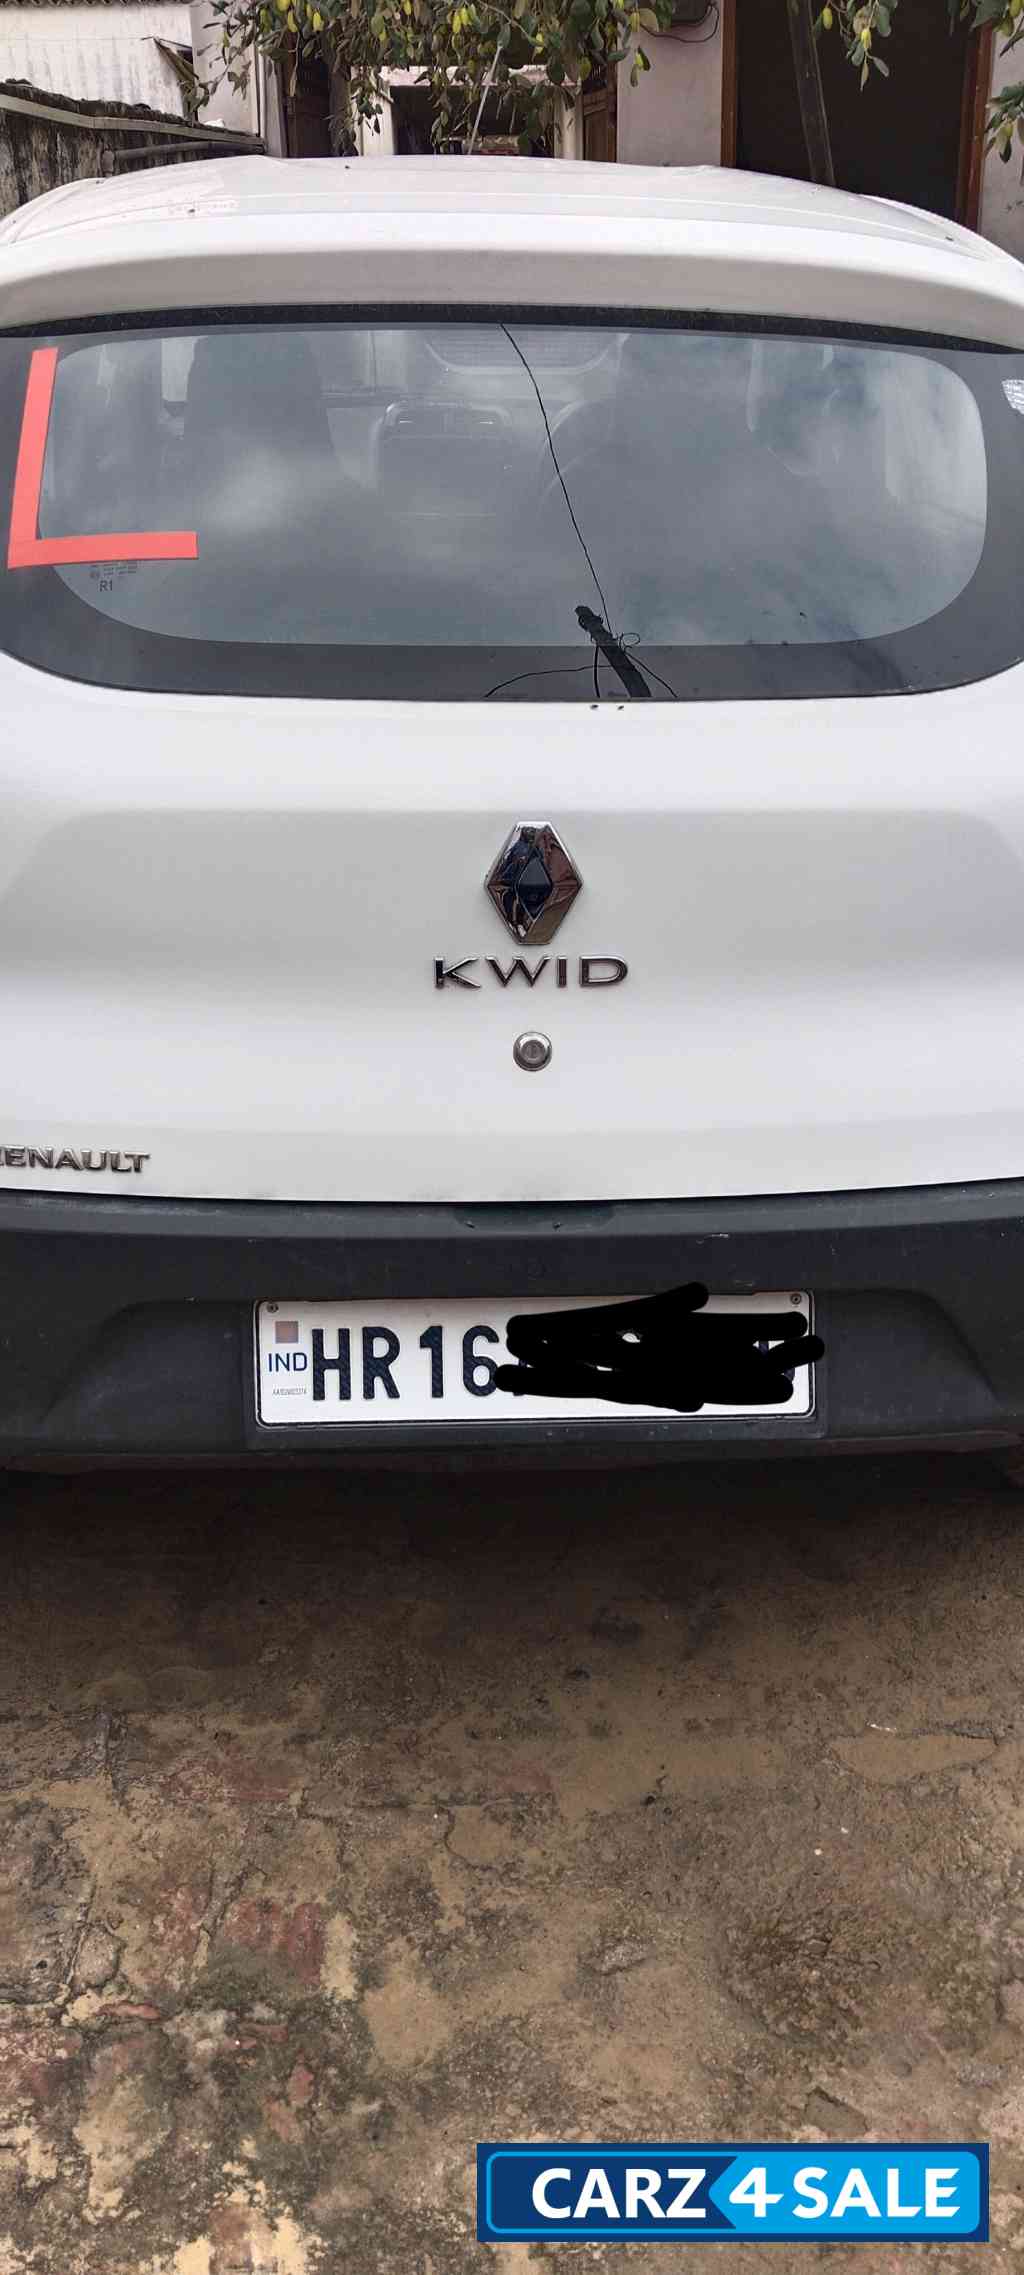 Renault Kwid RXT 1.0